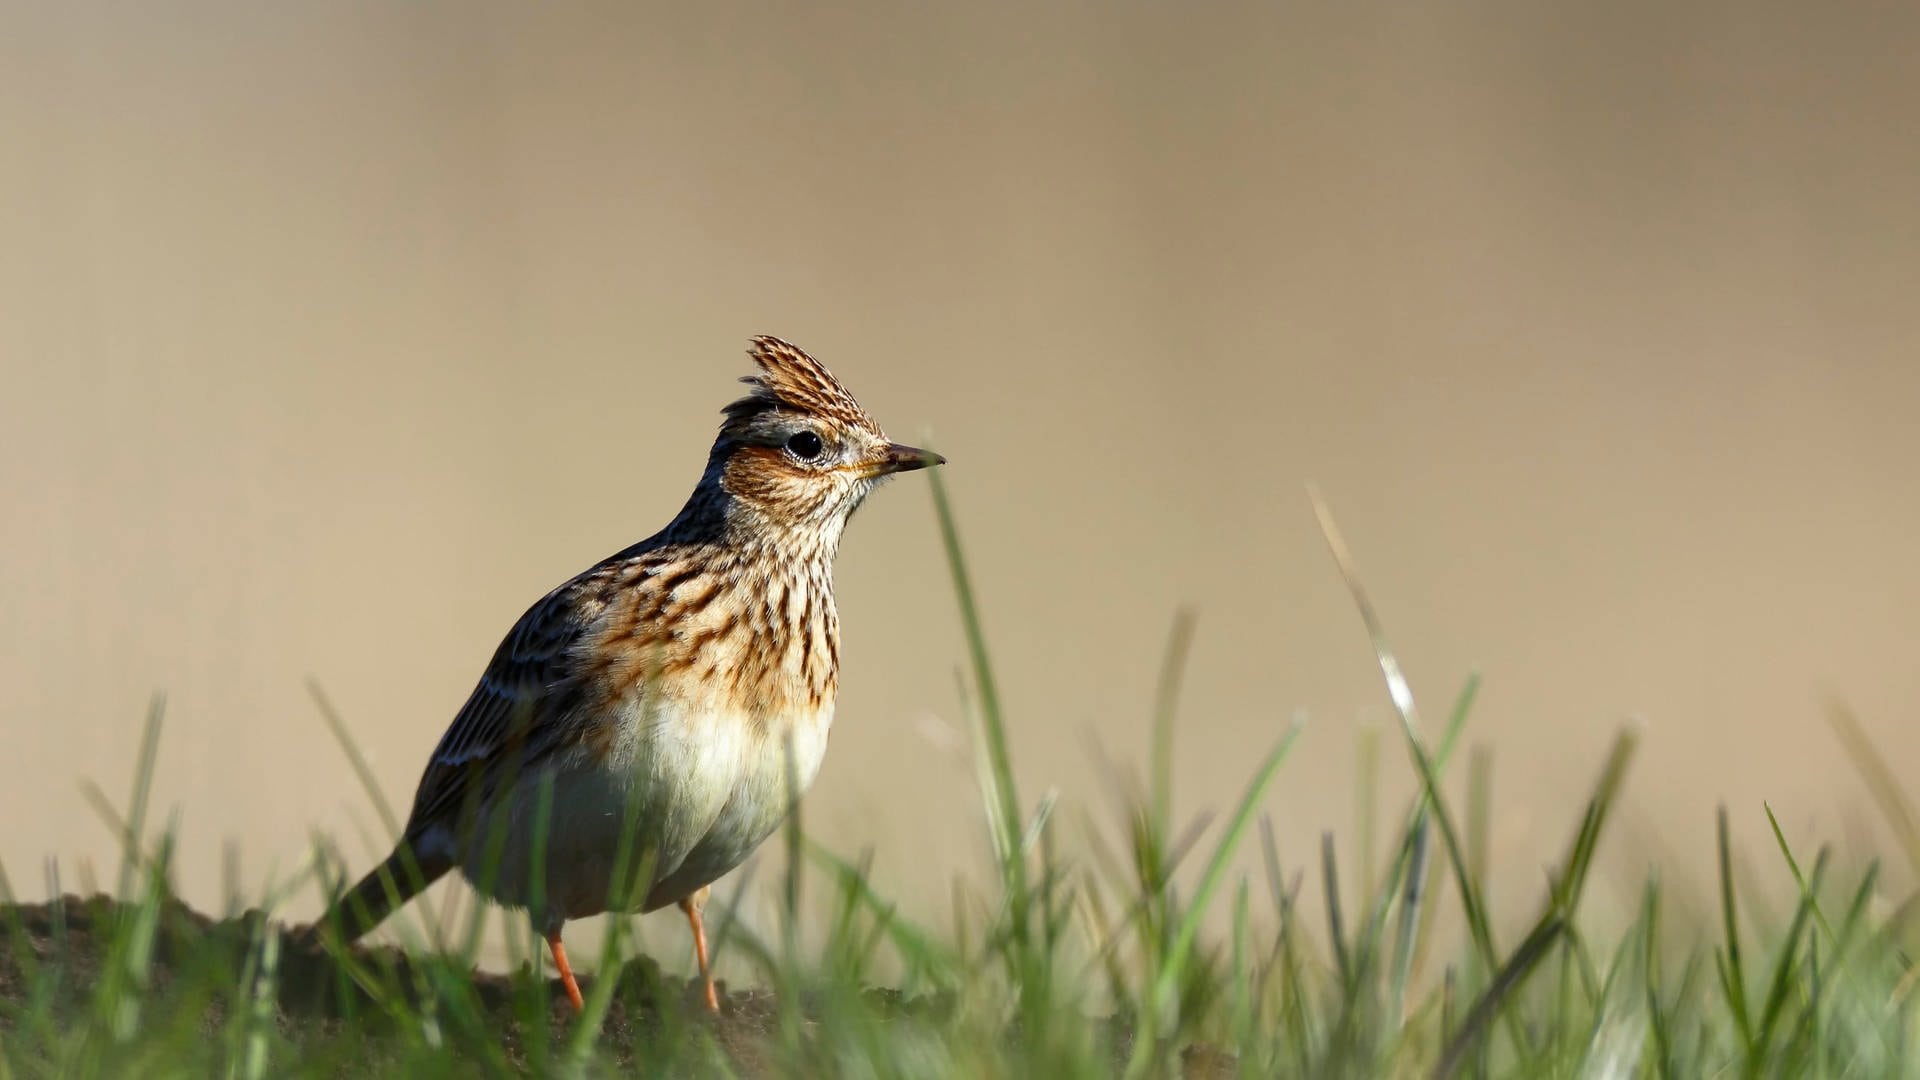 Vogelsterben in RLP: Immer weniger Vögel auch auf Feld, Wiese und Weide